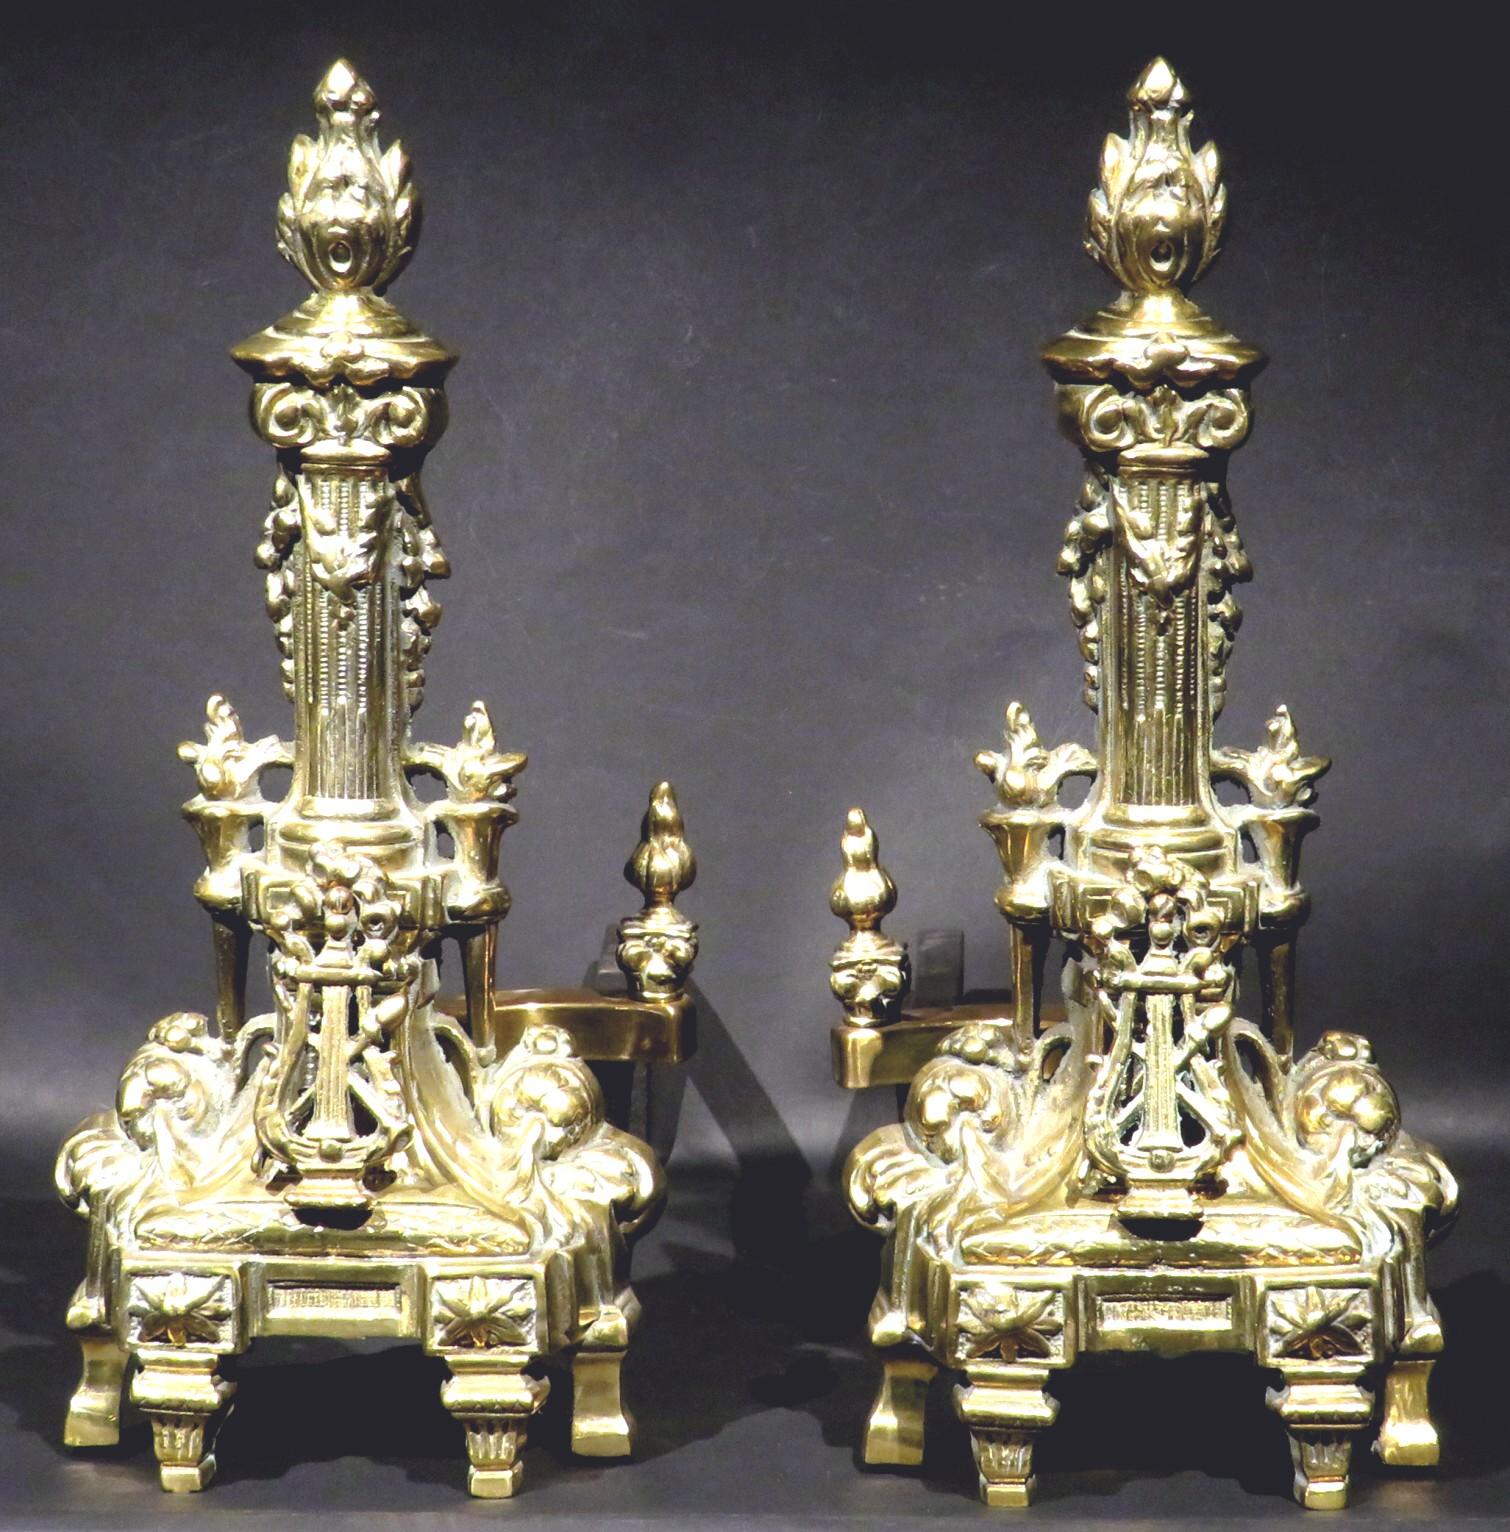 Ein großes und beeindruckendes Paar vergoldeter Bronzeschränke im Louis XVI-Stil mit applizierten leierförmigen Elementen, die vor torchelförmigen Säulen mit flammenförmigen Endstücken stehen.